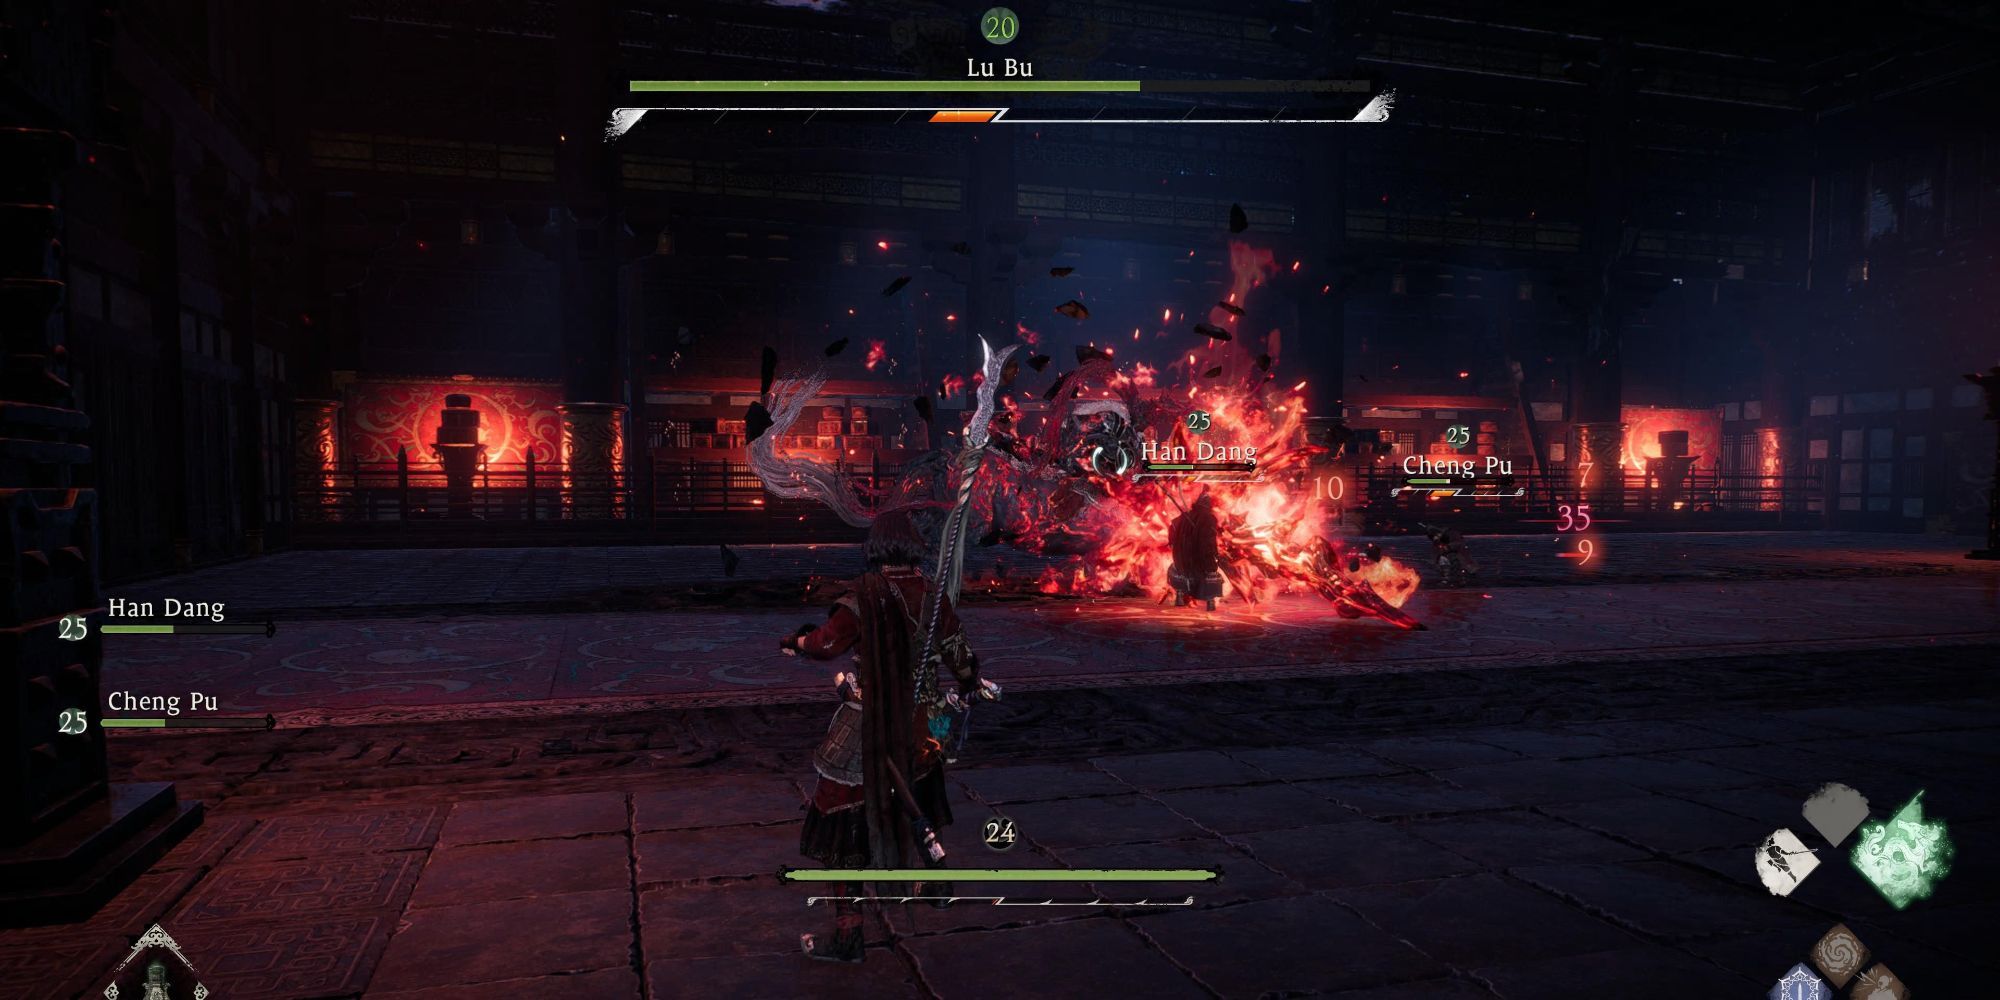 Wo Long_ Fallen Dynasty - Lu Bu demon boss sets himself on fire during the fight